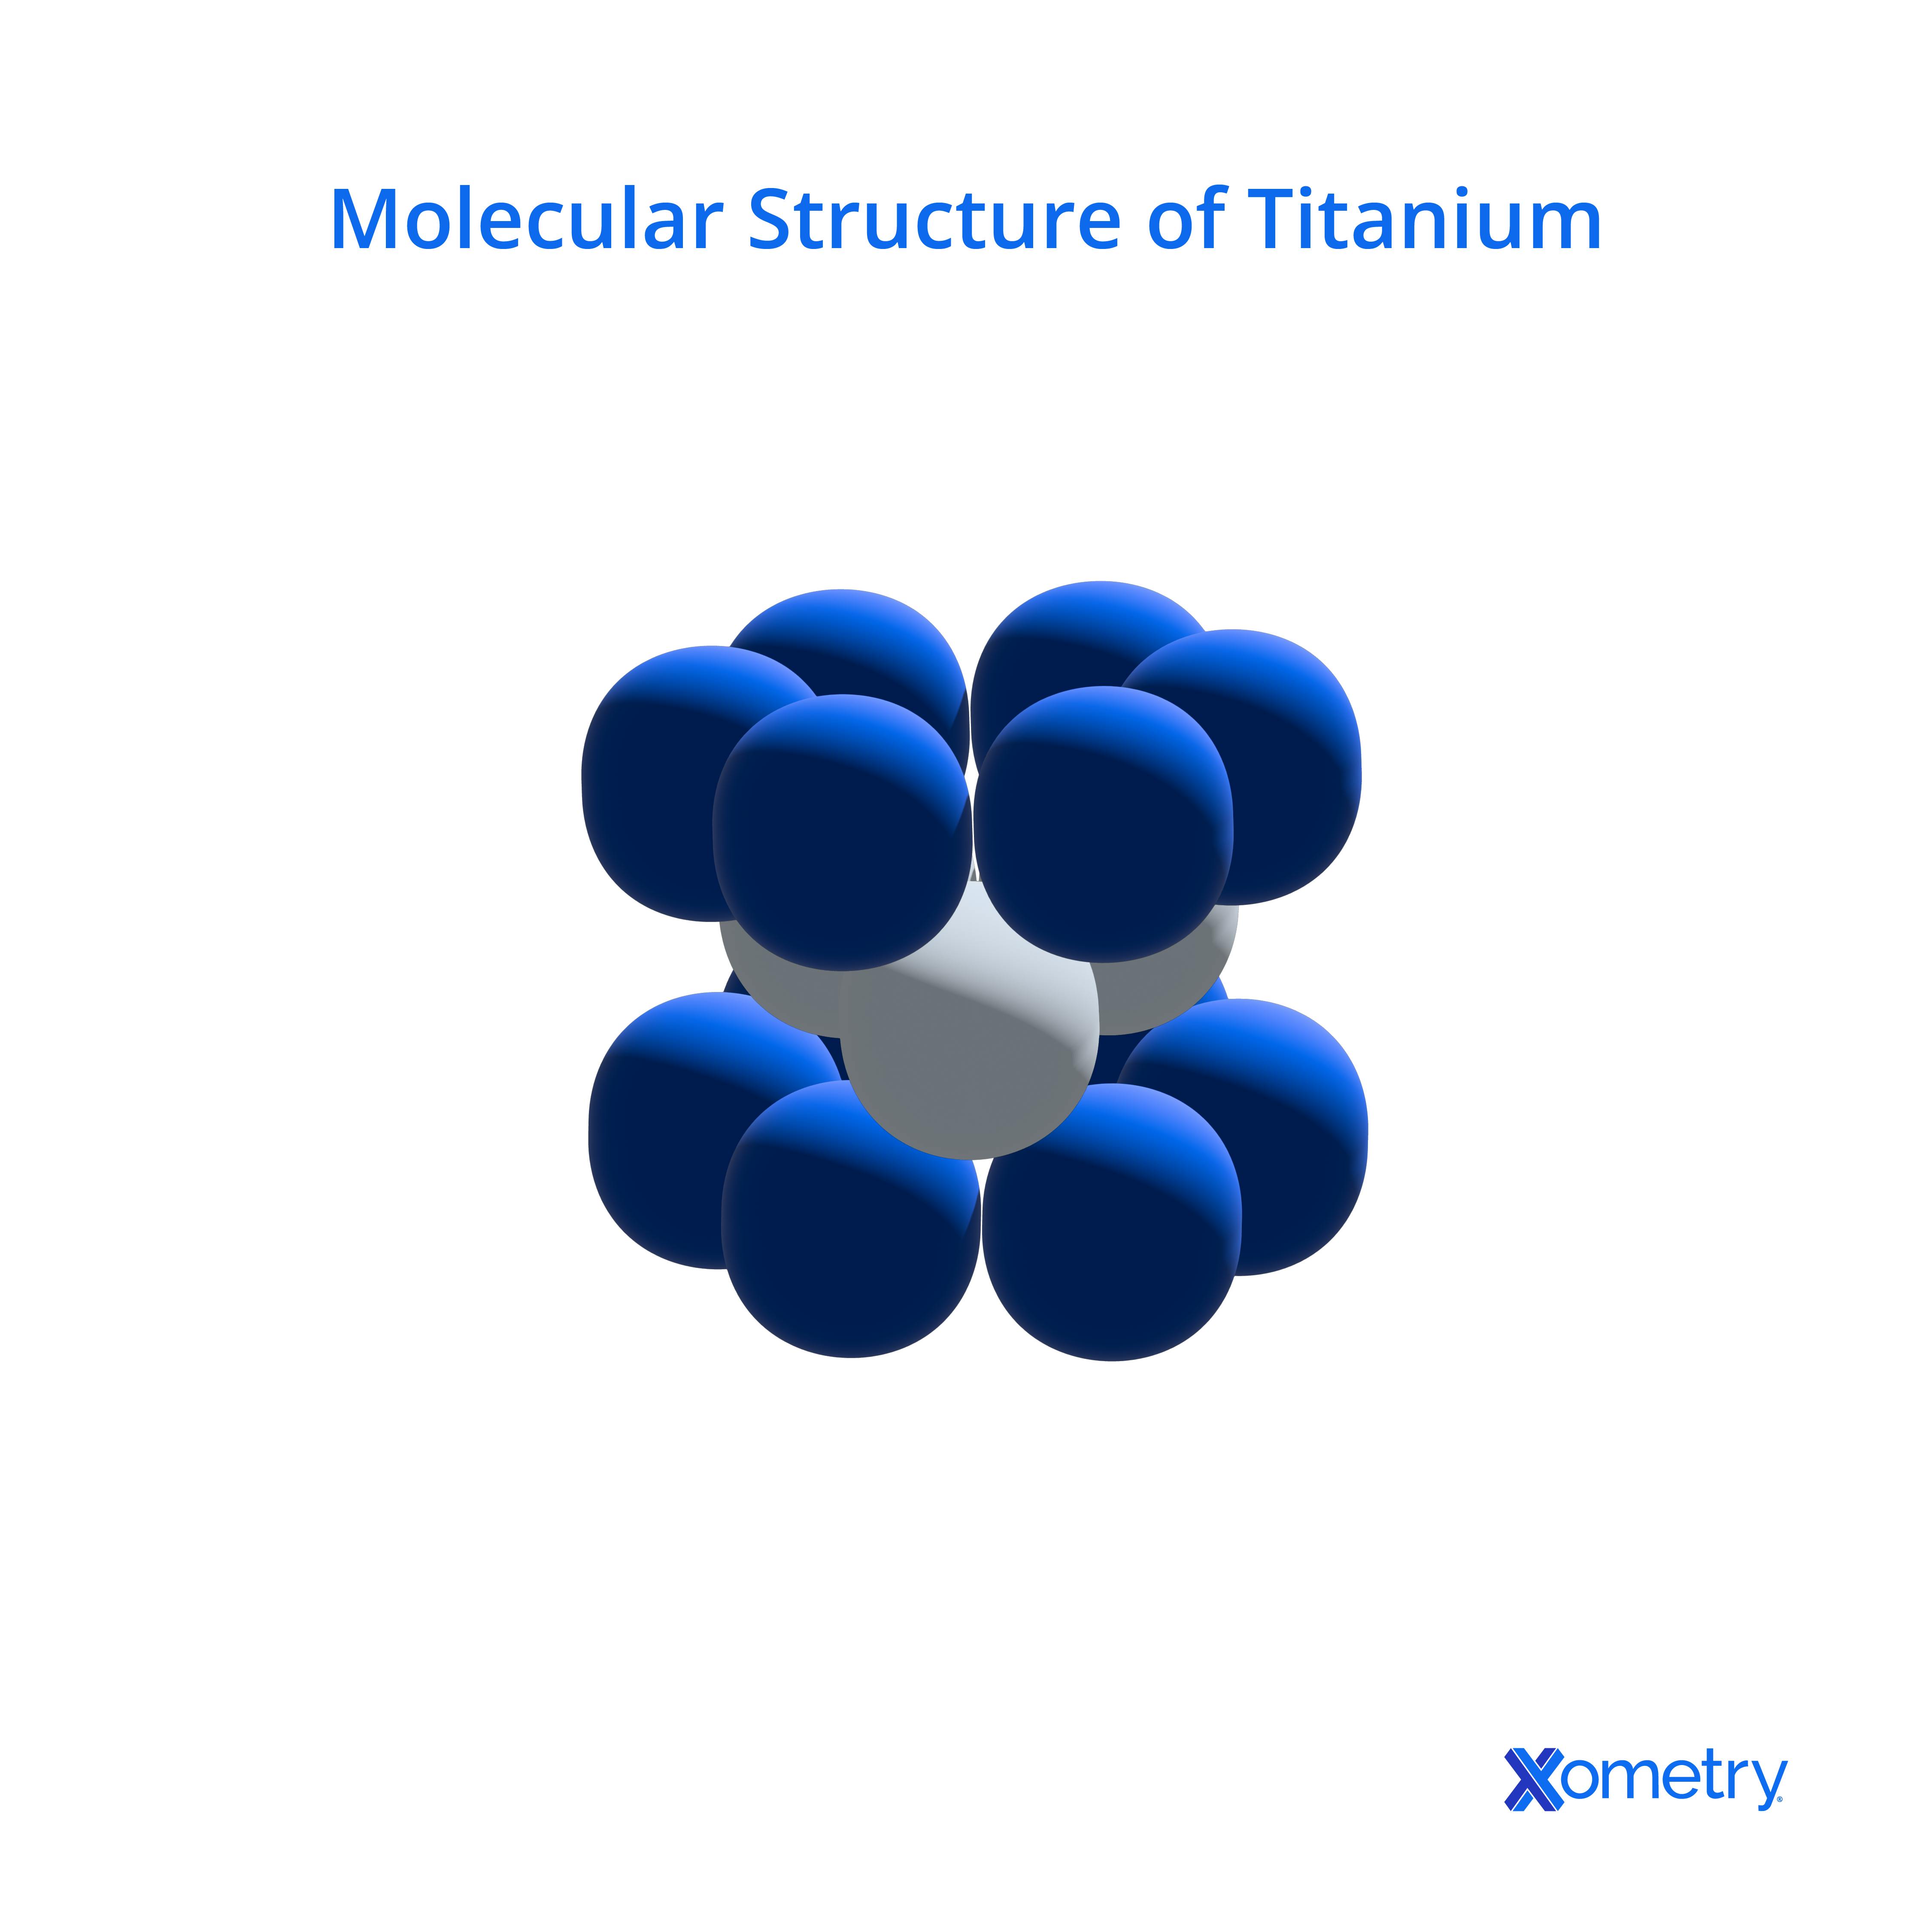 Molecular structure of Titanium